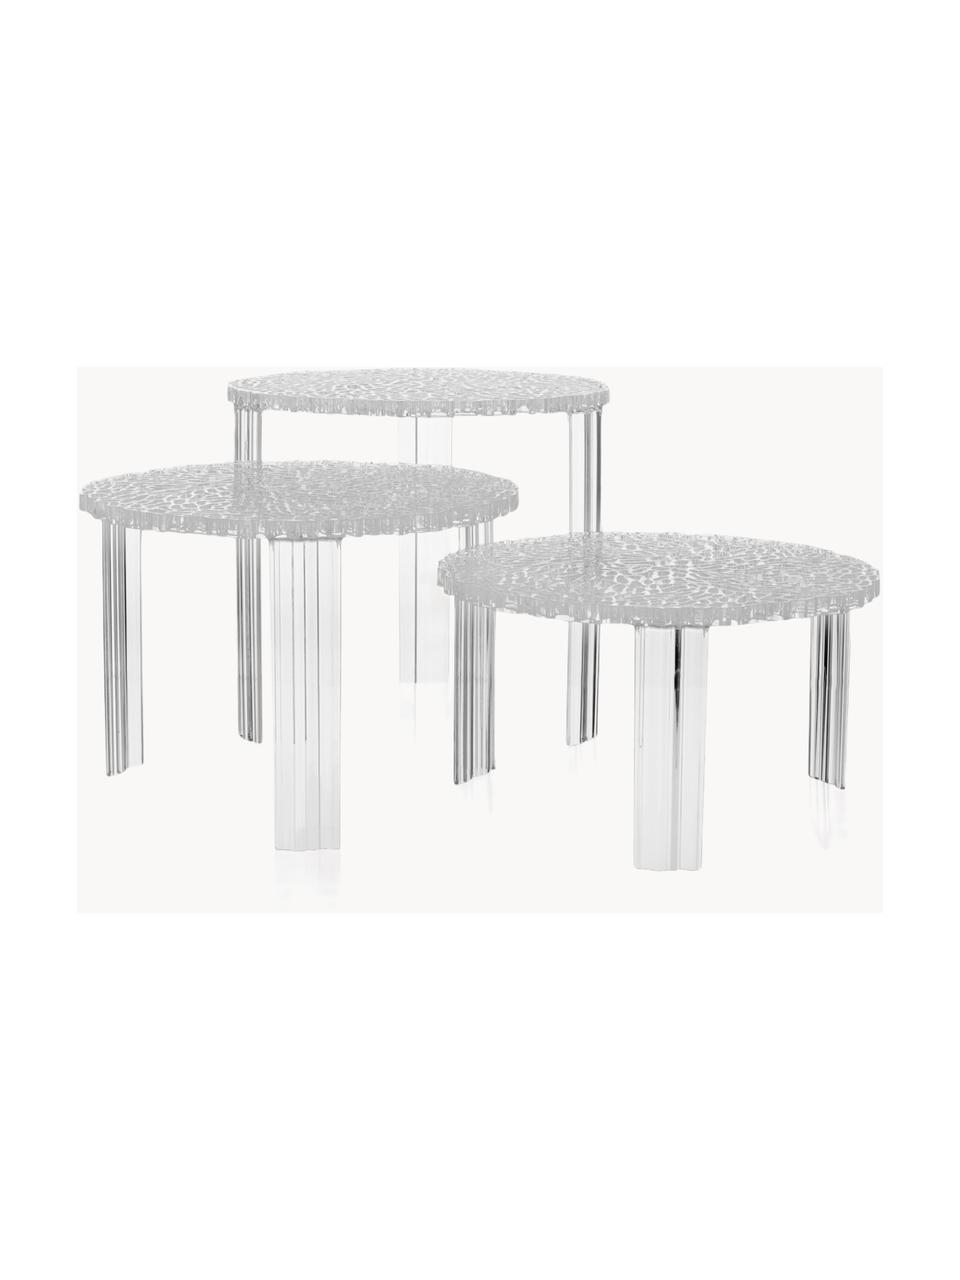 Ogrodowy stolik kawowy T-Table, W 36 cm, Szkło akrylowe, Transparentny, Średnica: 50 cm